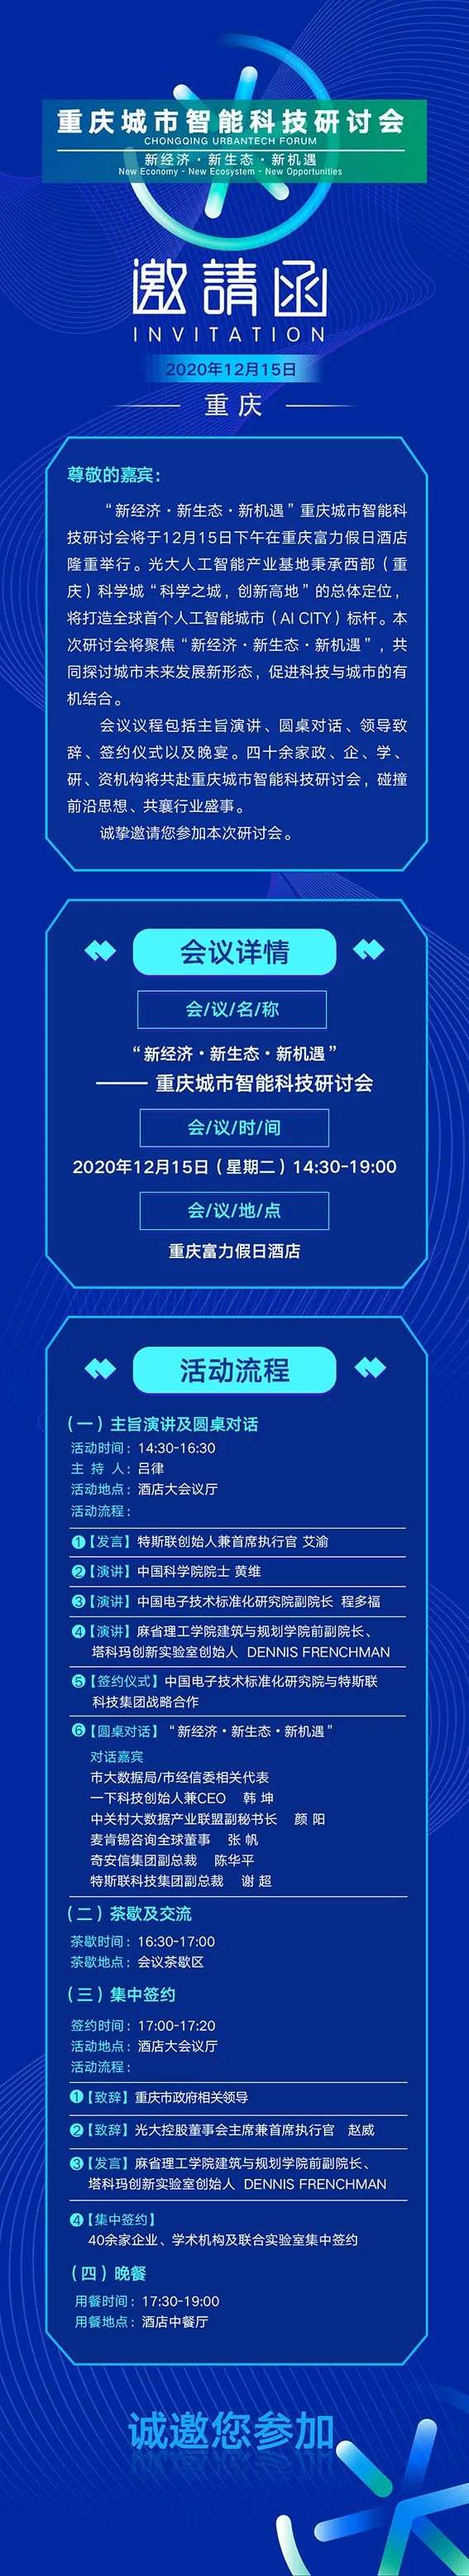 城市智能科技盛会即将在重庆举办